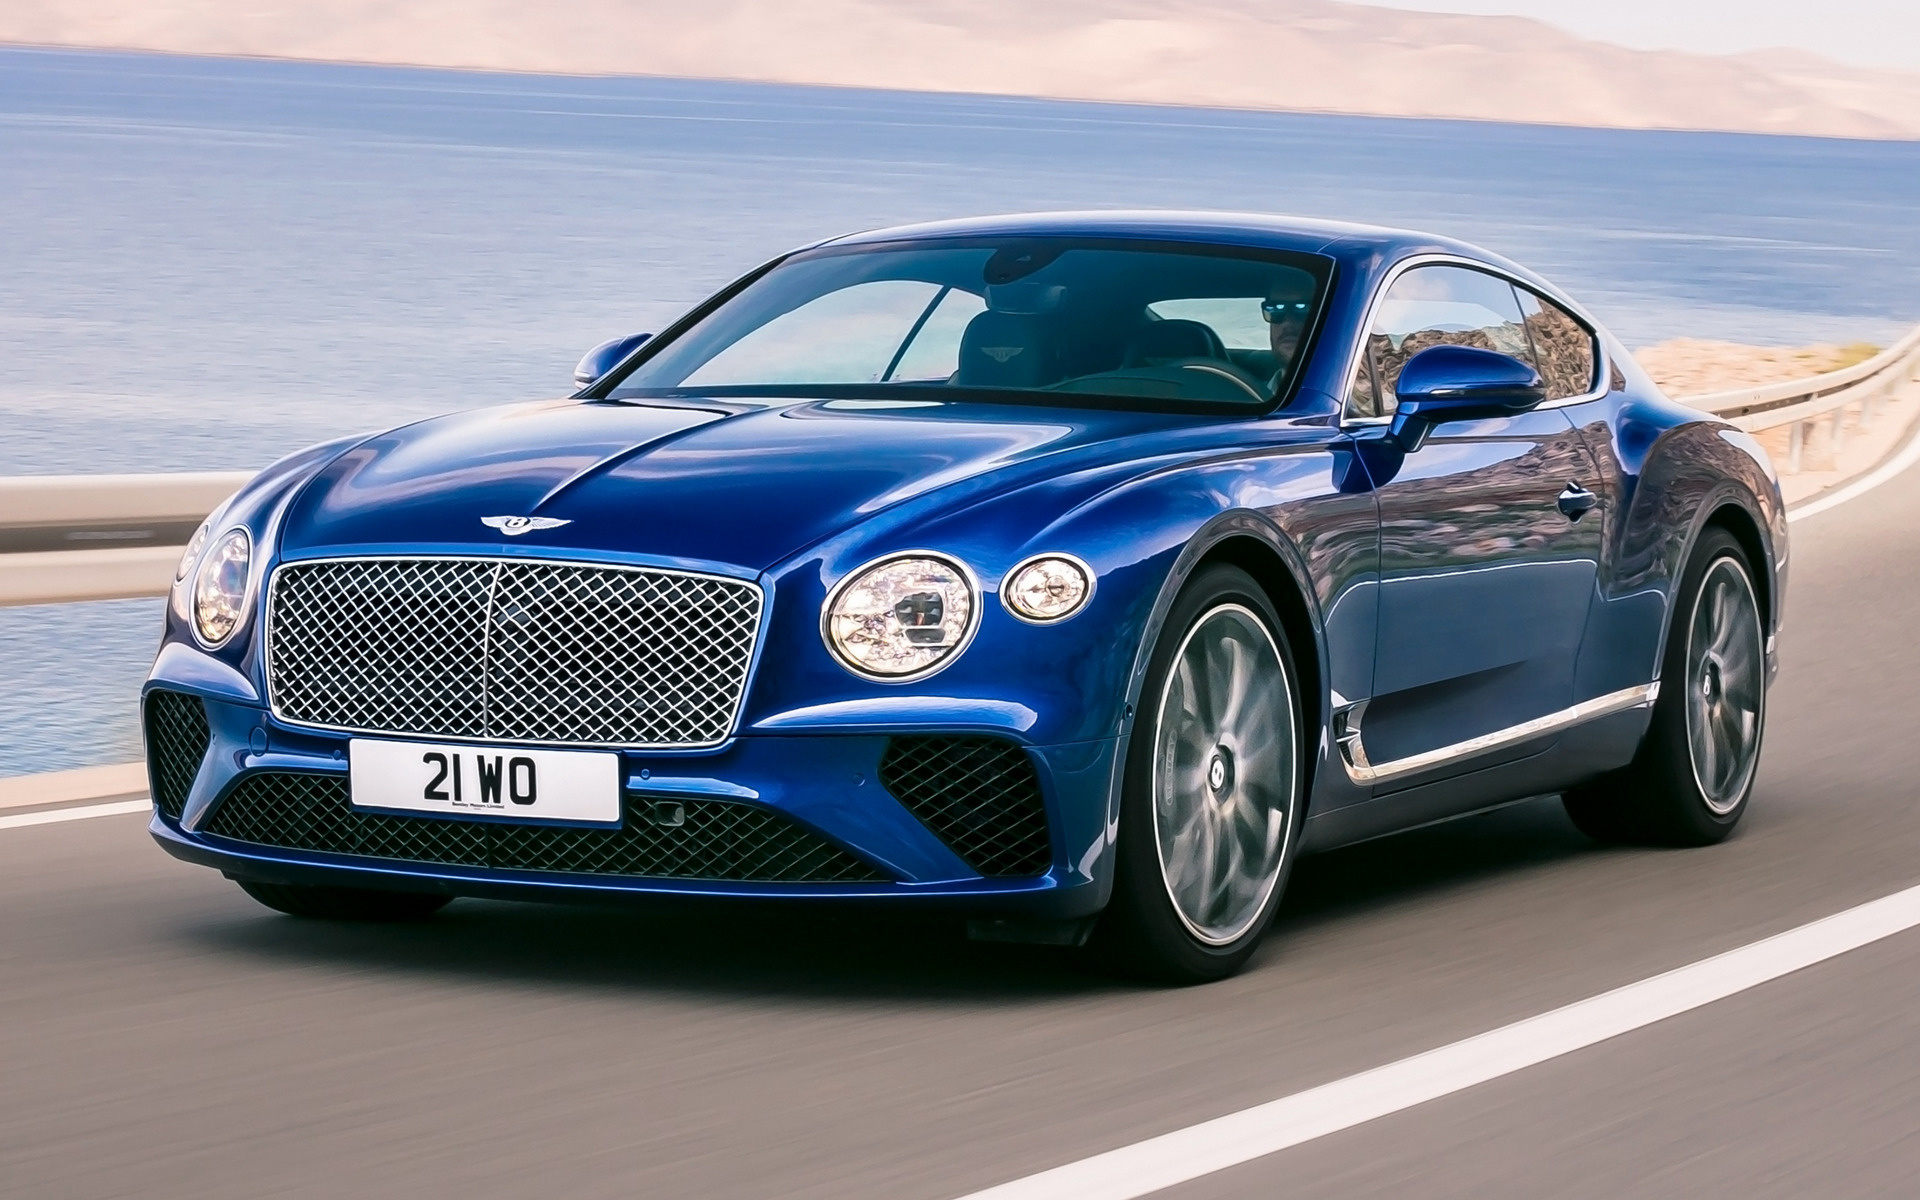 Bentley Continental GT, Luxurious grand tourer, Stunning HD wallpapers, Automotive perfection, 1920x1200 HD Desktop